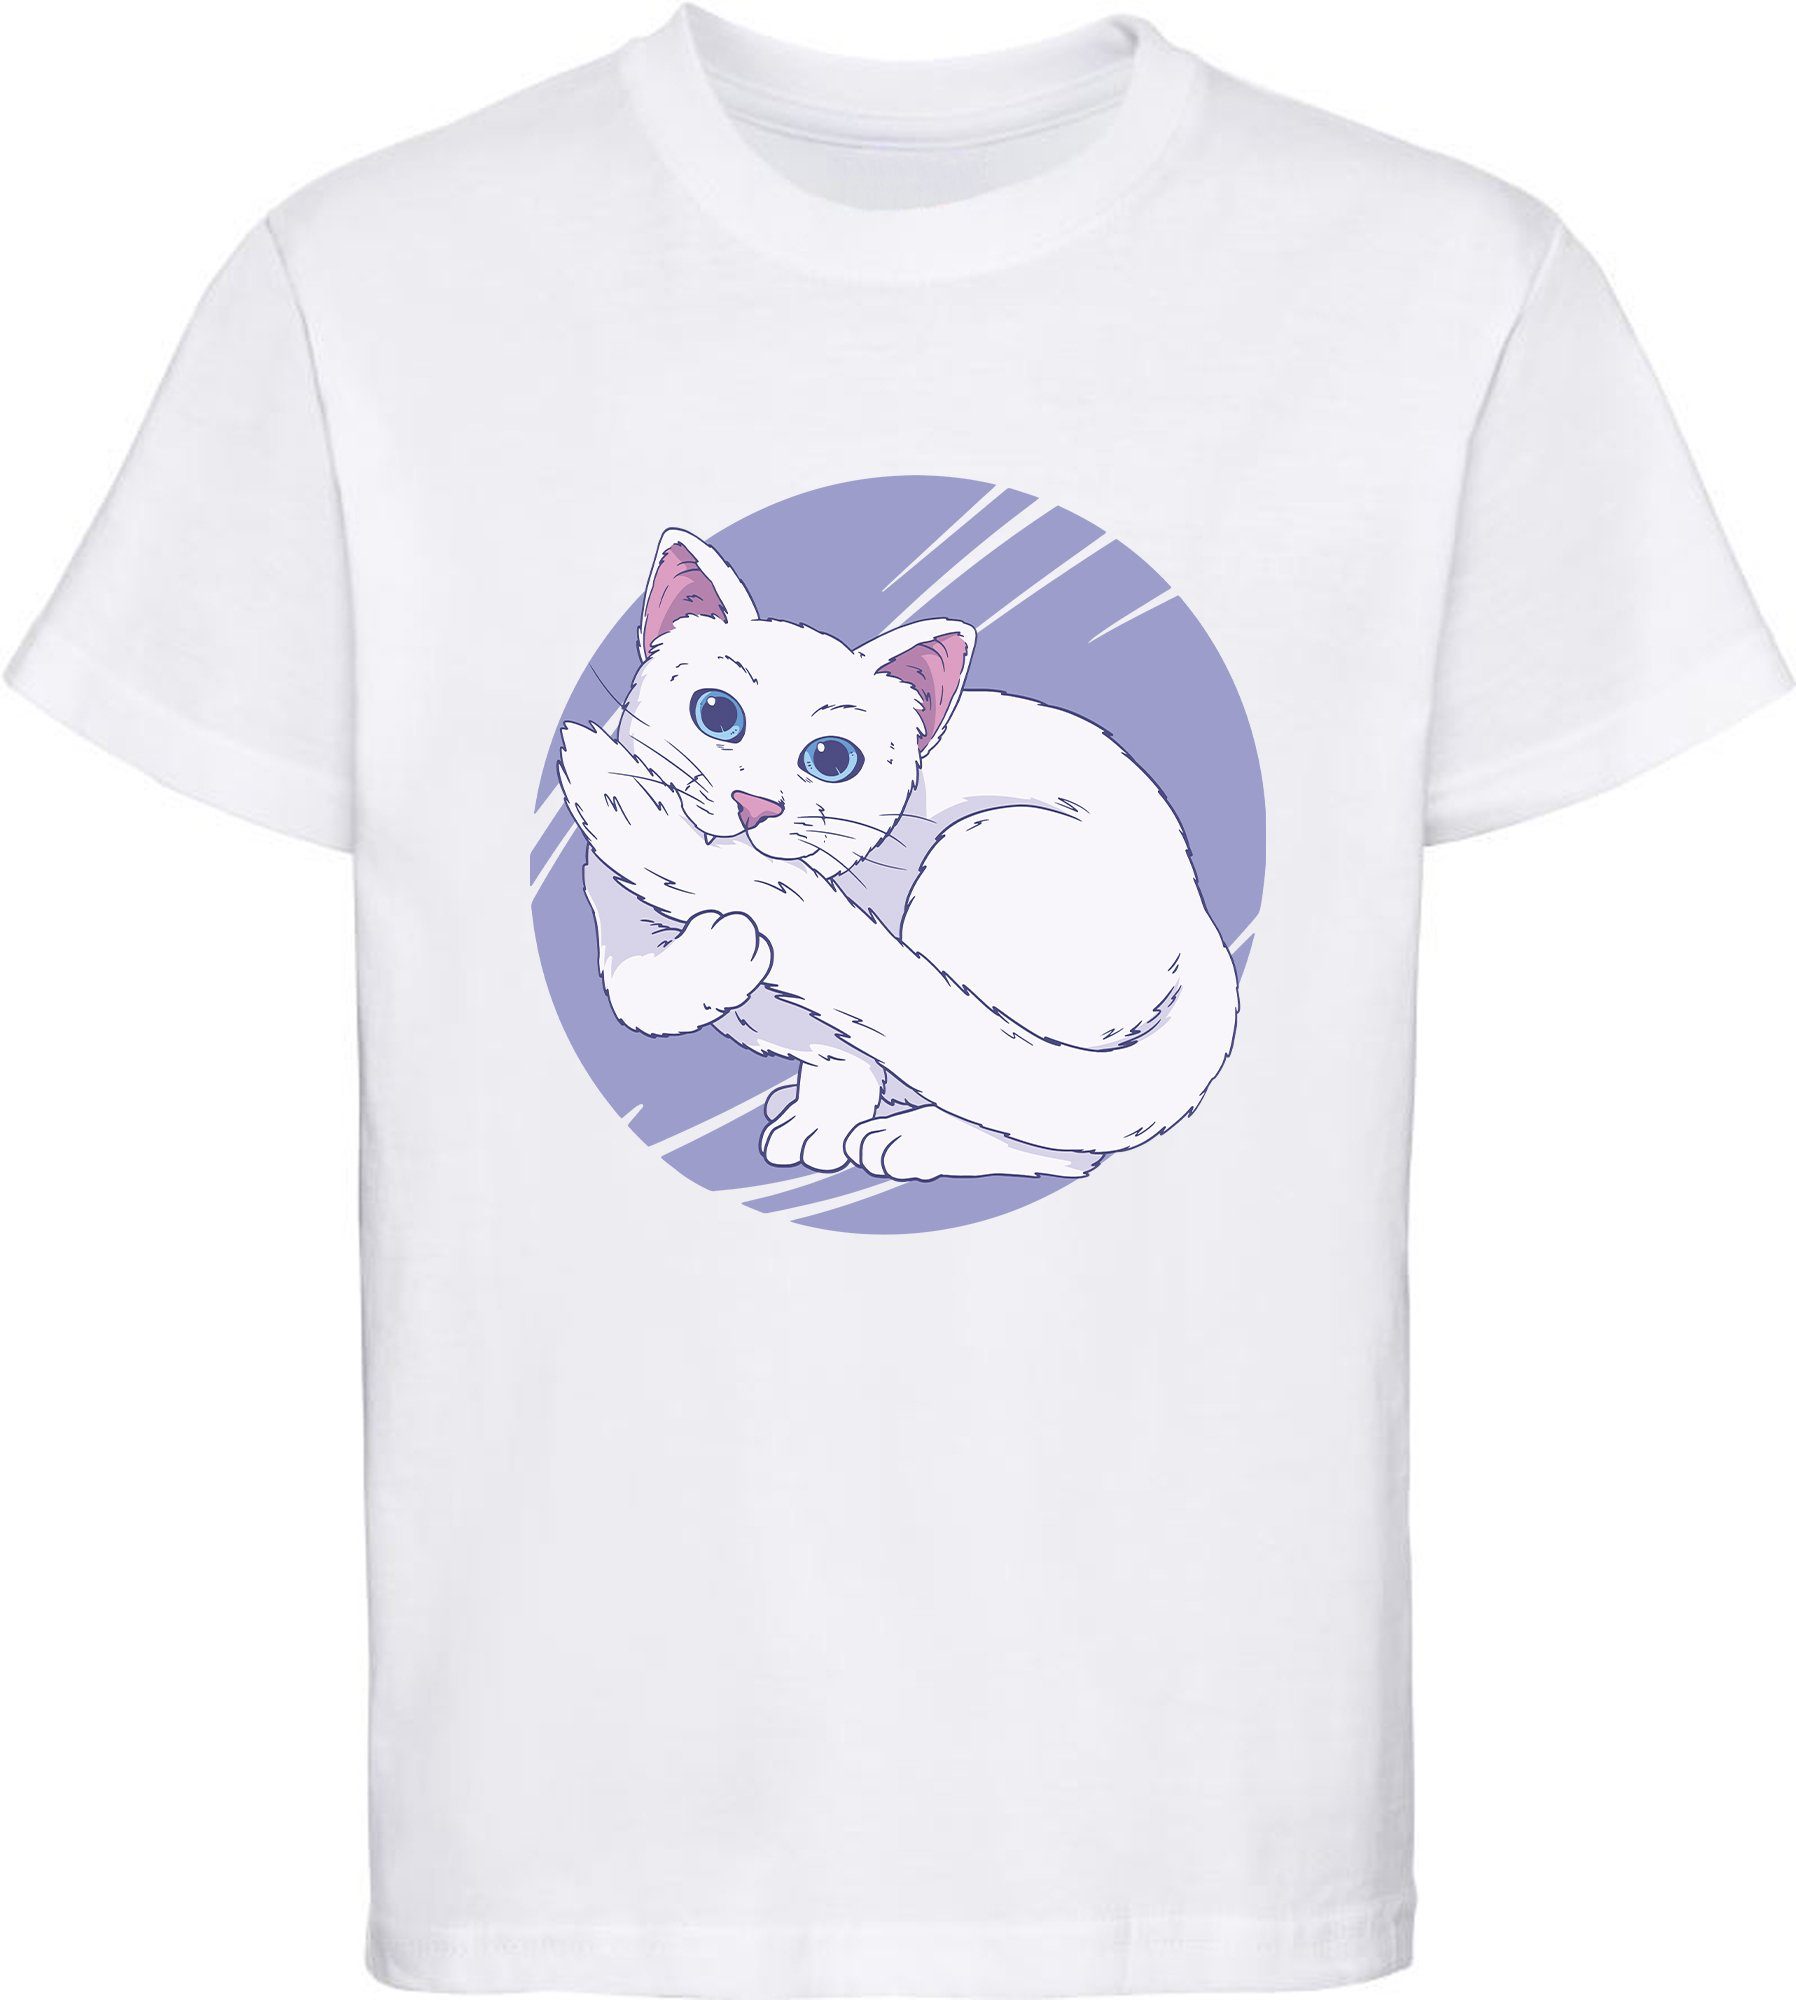 MyDesign24 Print-Shirt bedrucktes Mädchen T-Shirt weiße Katze die in Ihren Schwanz beißt Baumwollshirt mit Aufdruck, weiß, schwarz, rot, rosa, i127 weiss